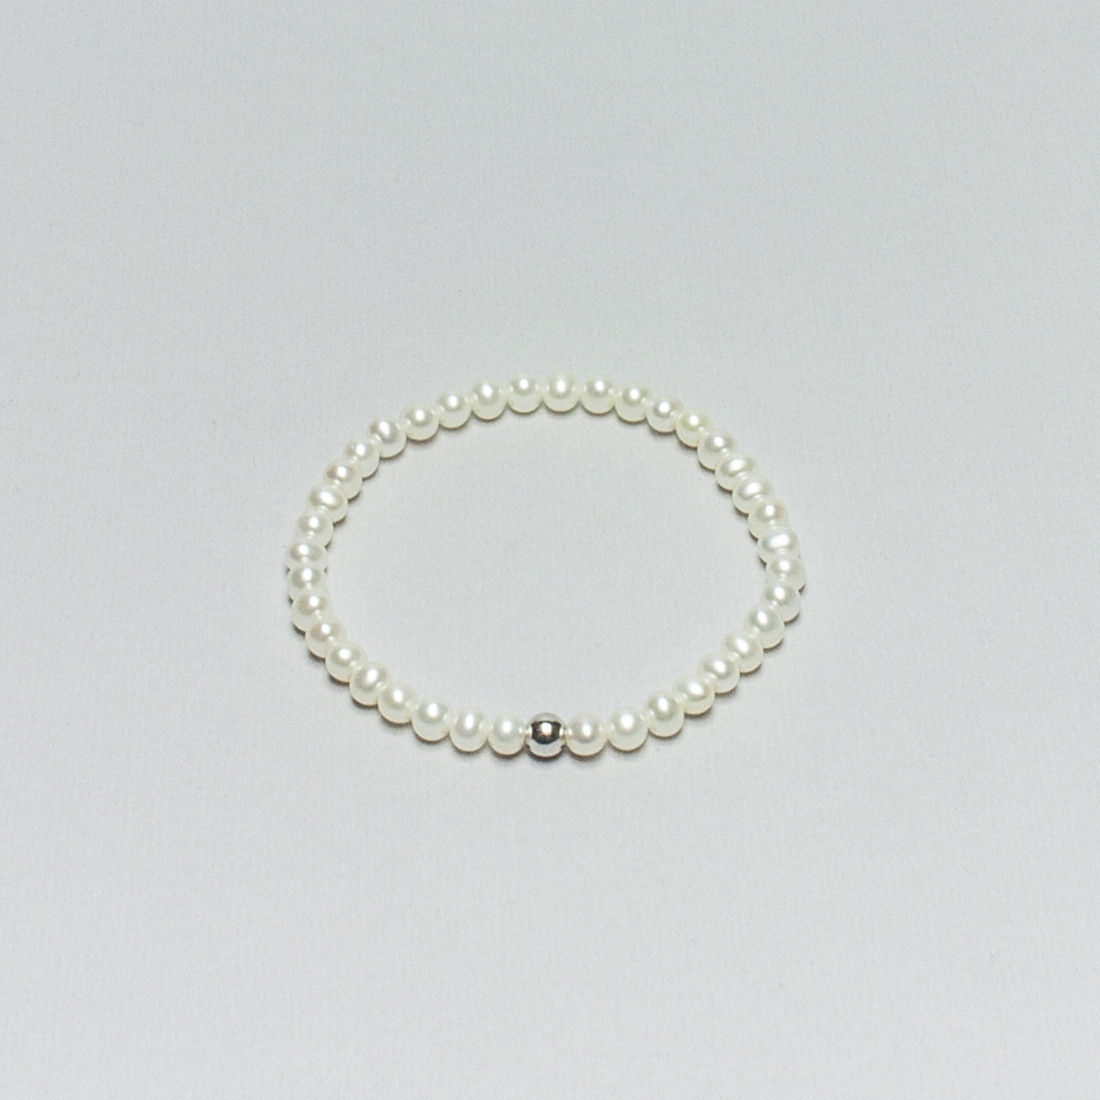 Bracciale elastico di Perle Bianche d'Acqua Dolce con sfera in Argento liscia